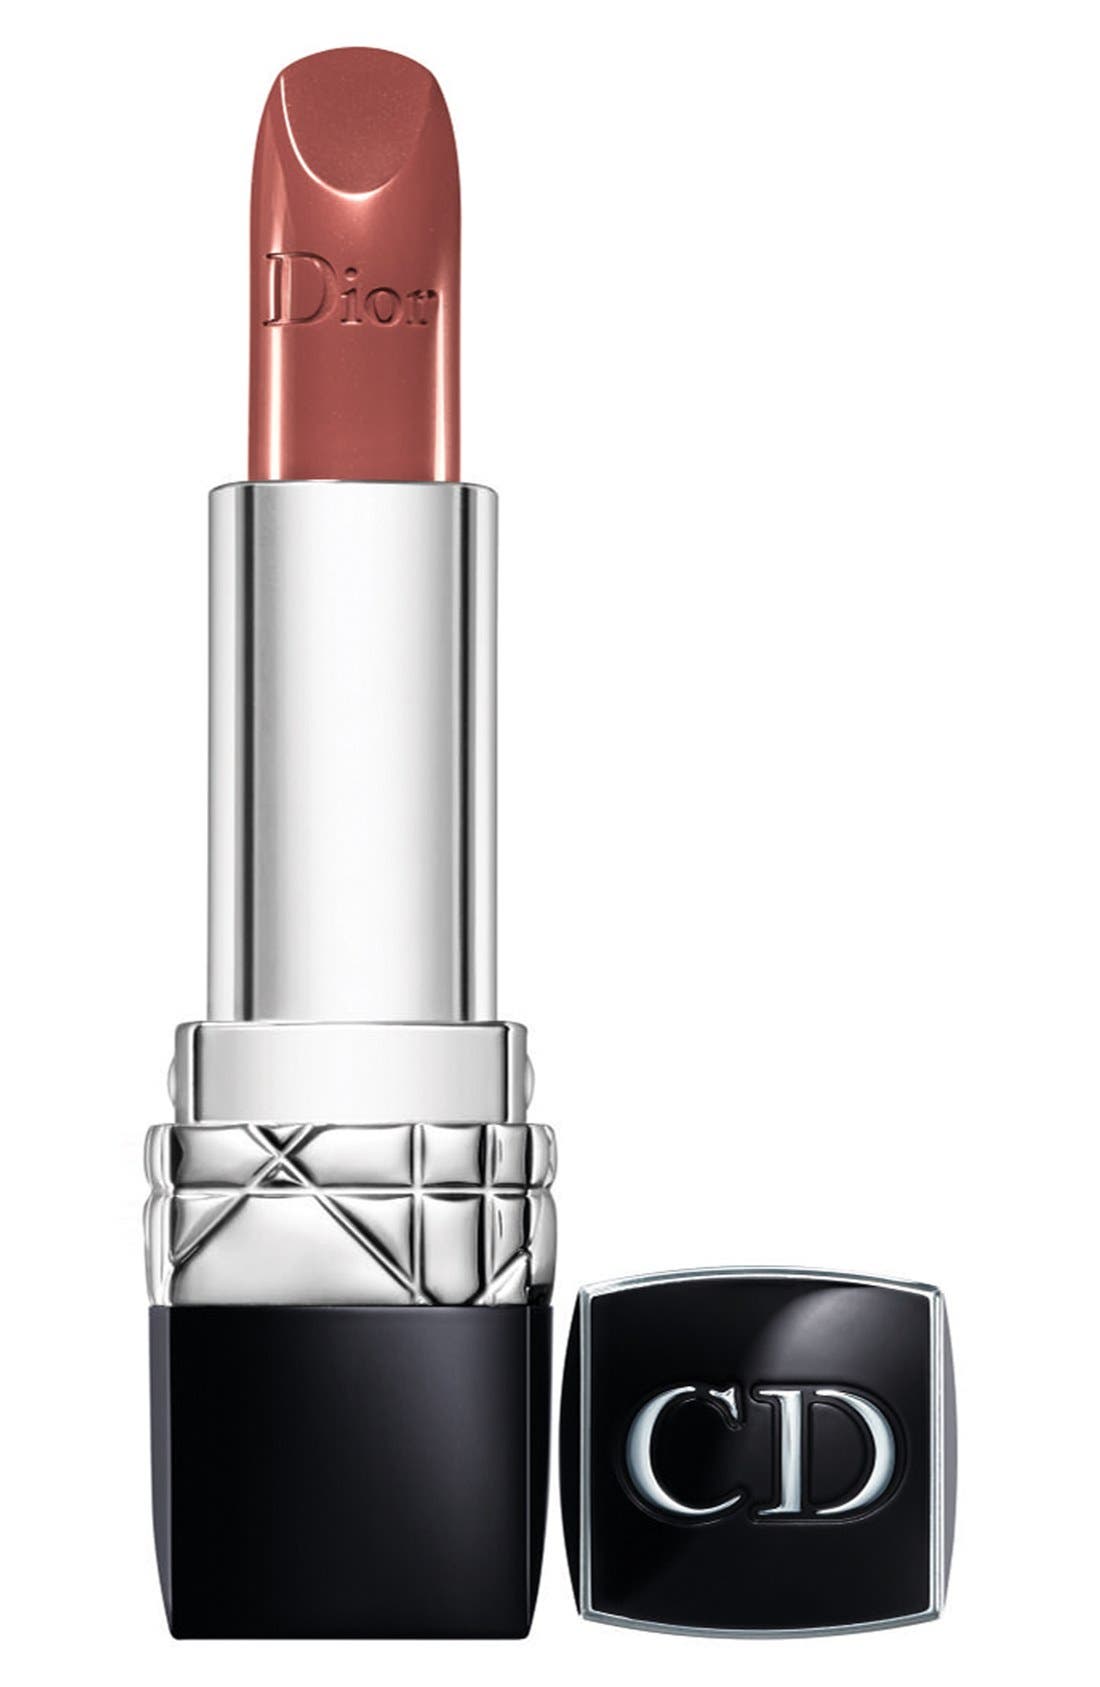 EAN 3348901157384 product image for Dior 'Rouge Dior' Lipstick - Brun Samarcande 434 | upcitemdb.com